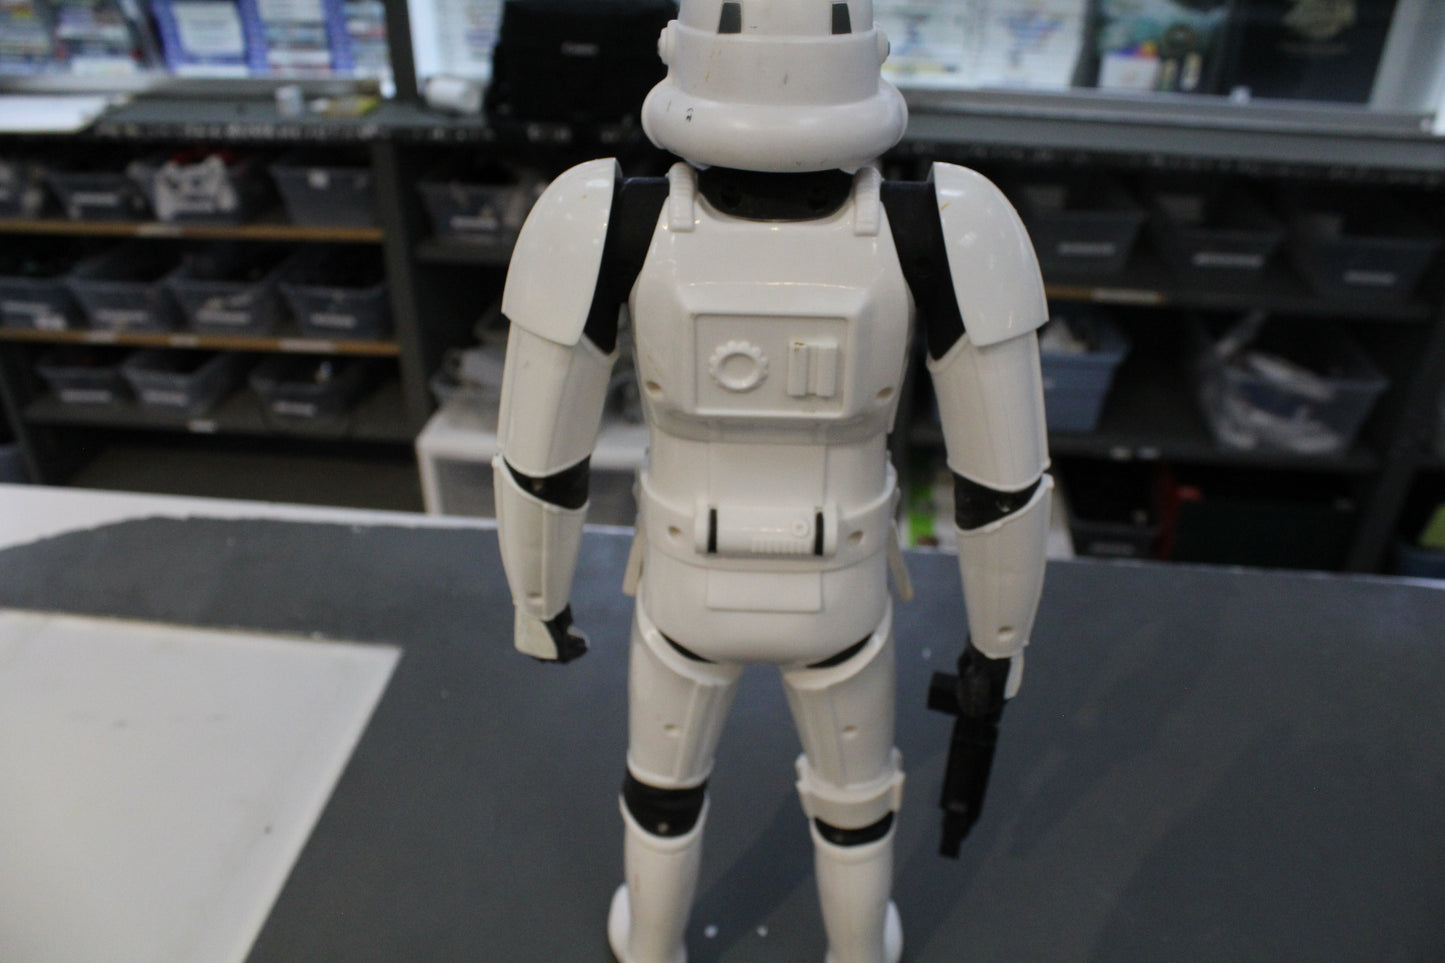 Star Wars Storm trooper 19 inch figure Jakks Pacfic 2014